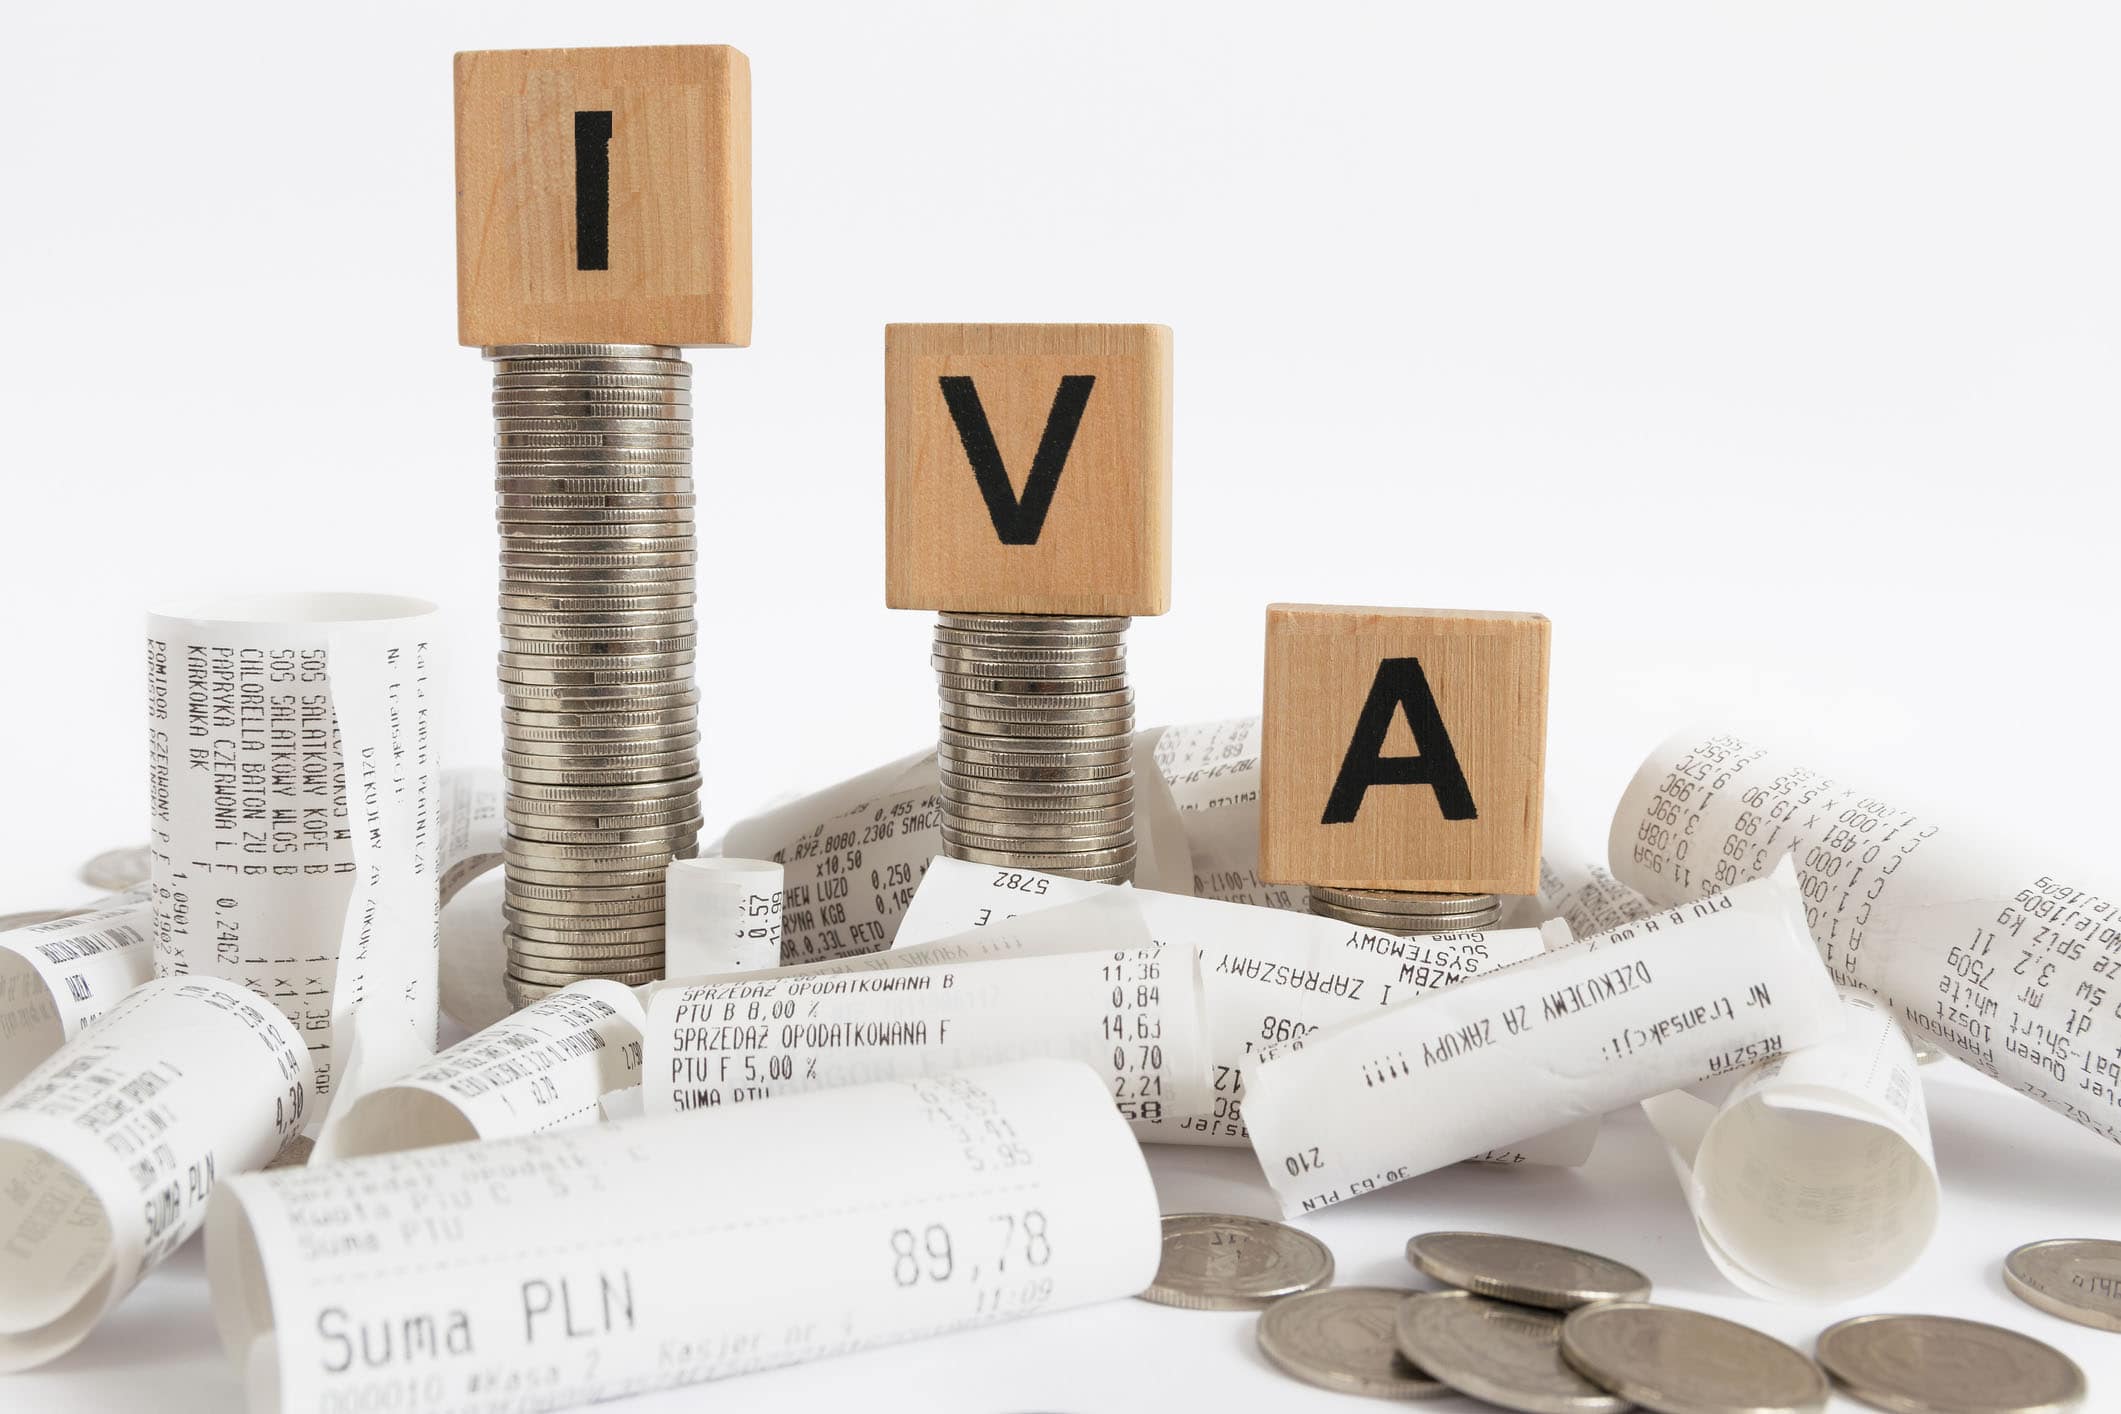 IVA Personalzaido y la experiencia latinoamericana y su importancia para las administraciones tributarias